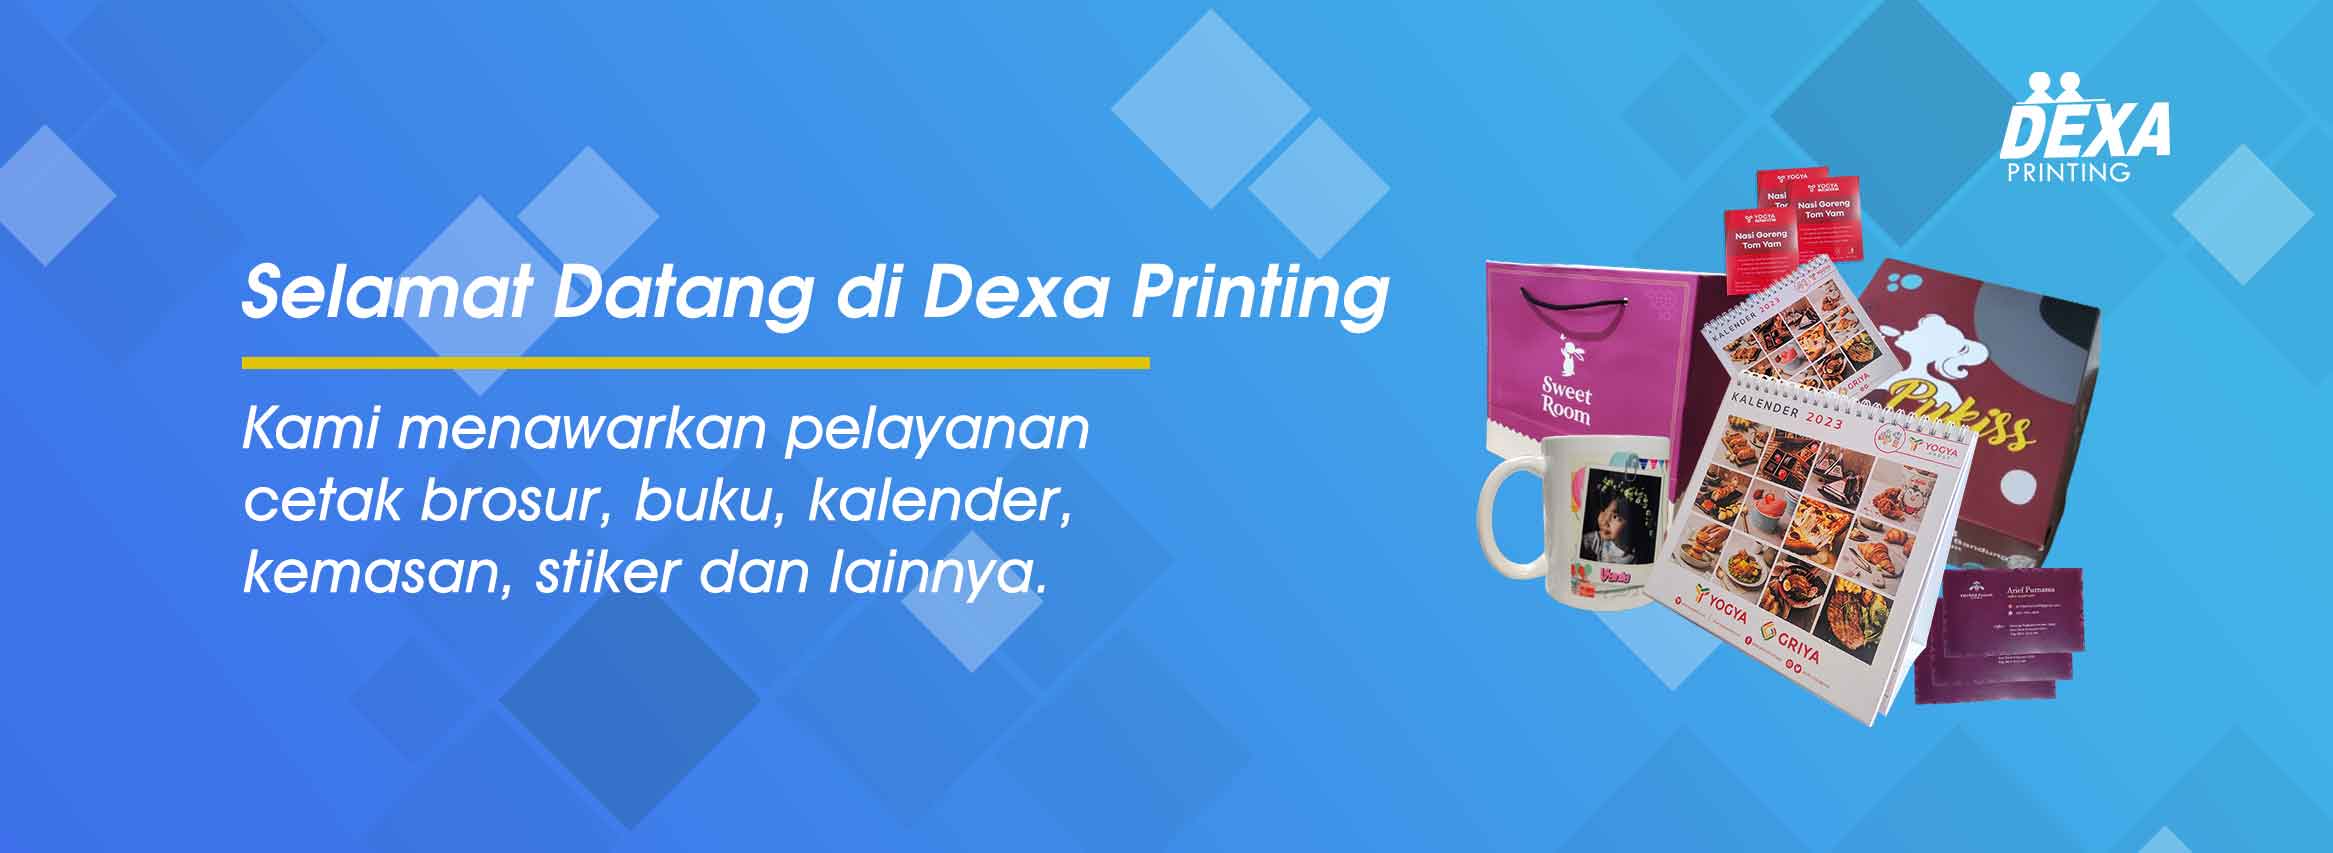 01.banner-dexa-printing-bandung